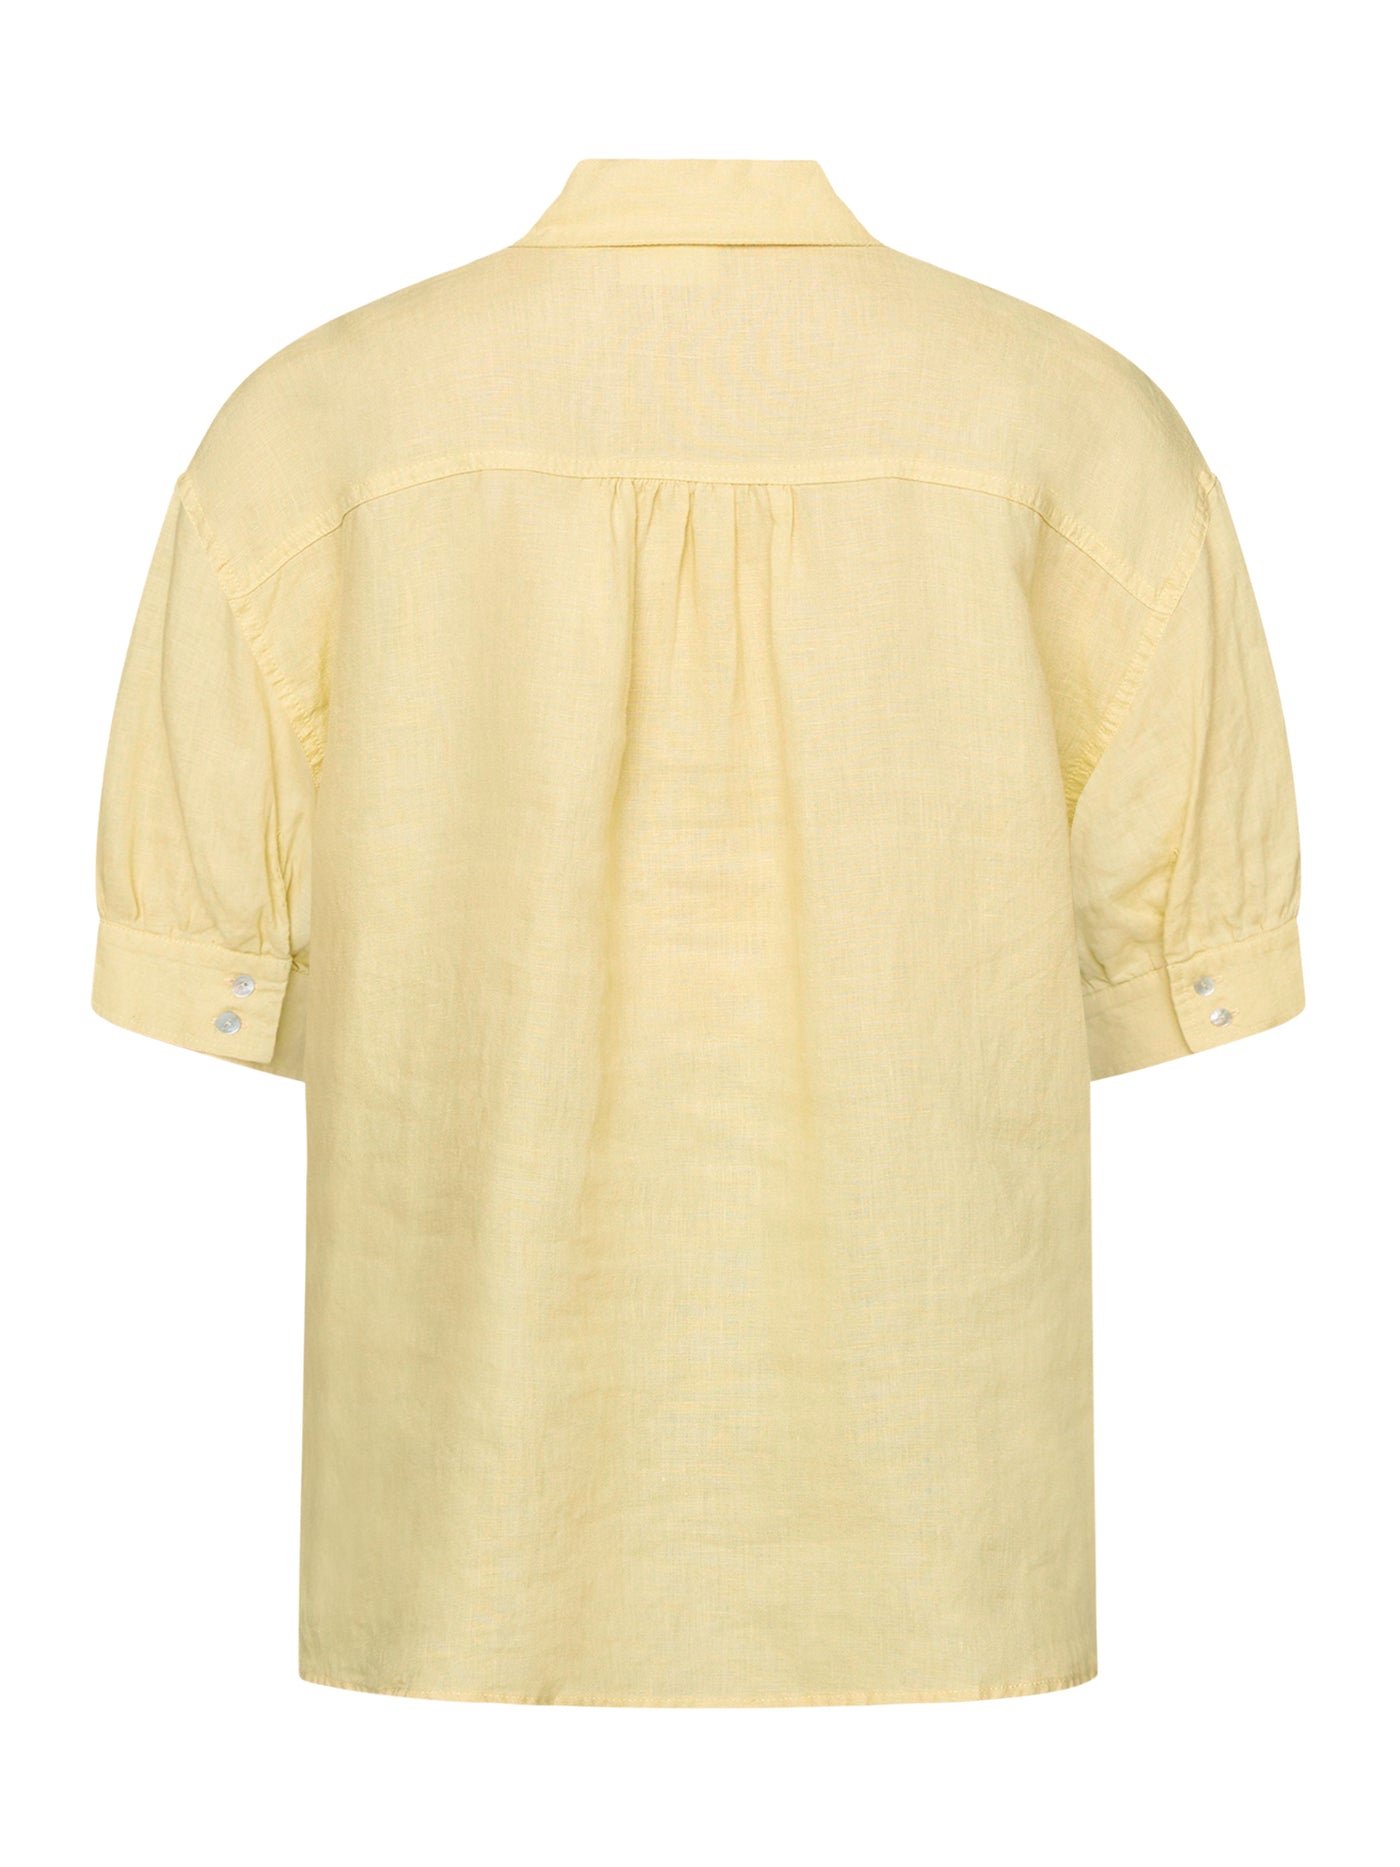 Skjorte - Straw Yellow